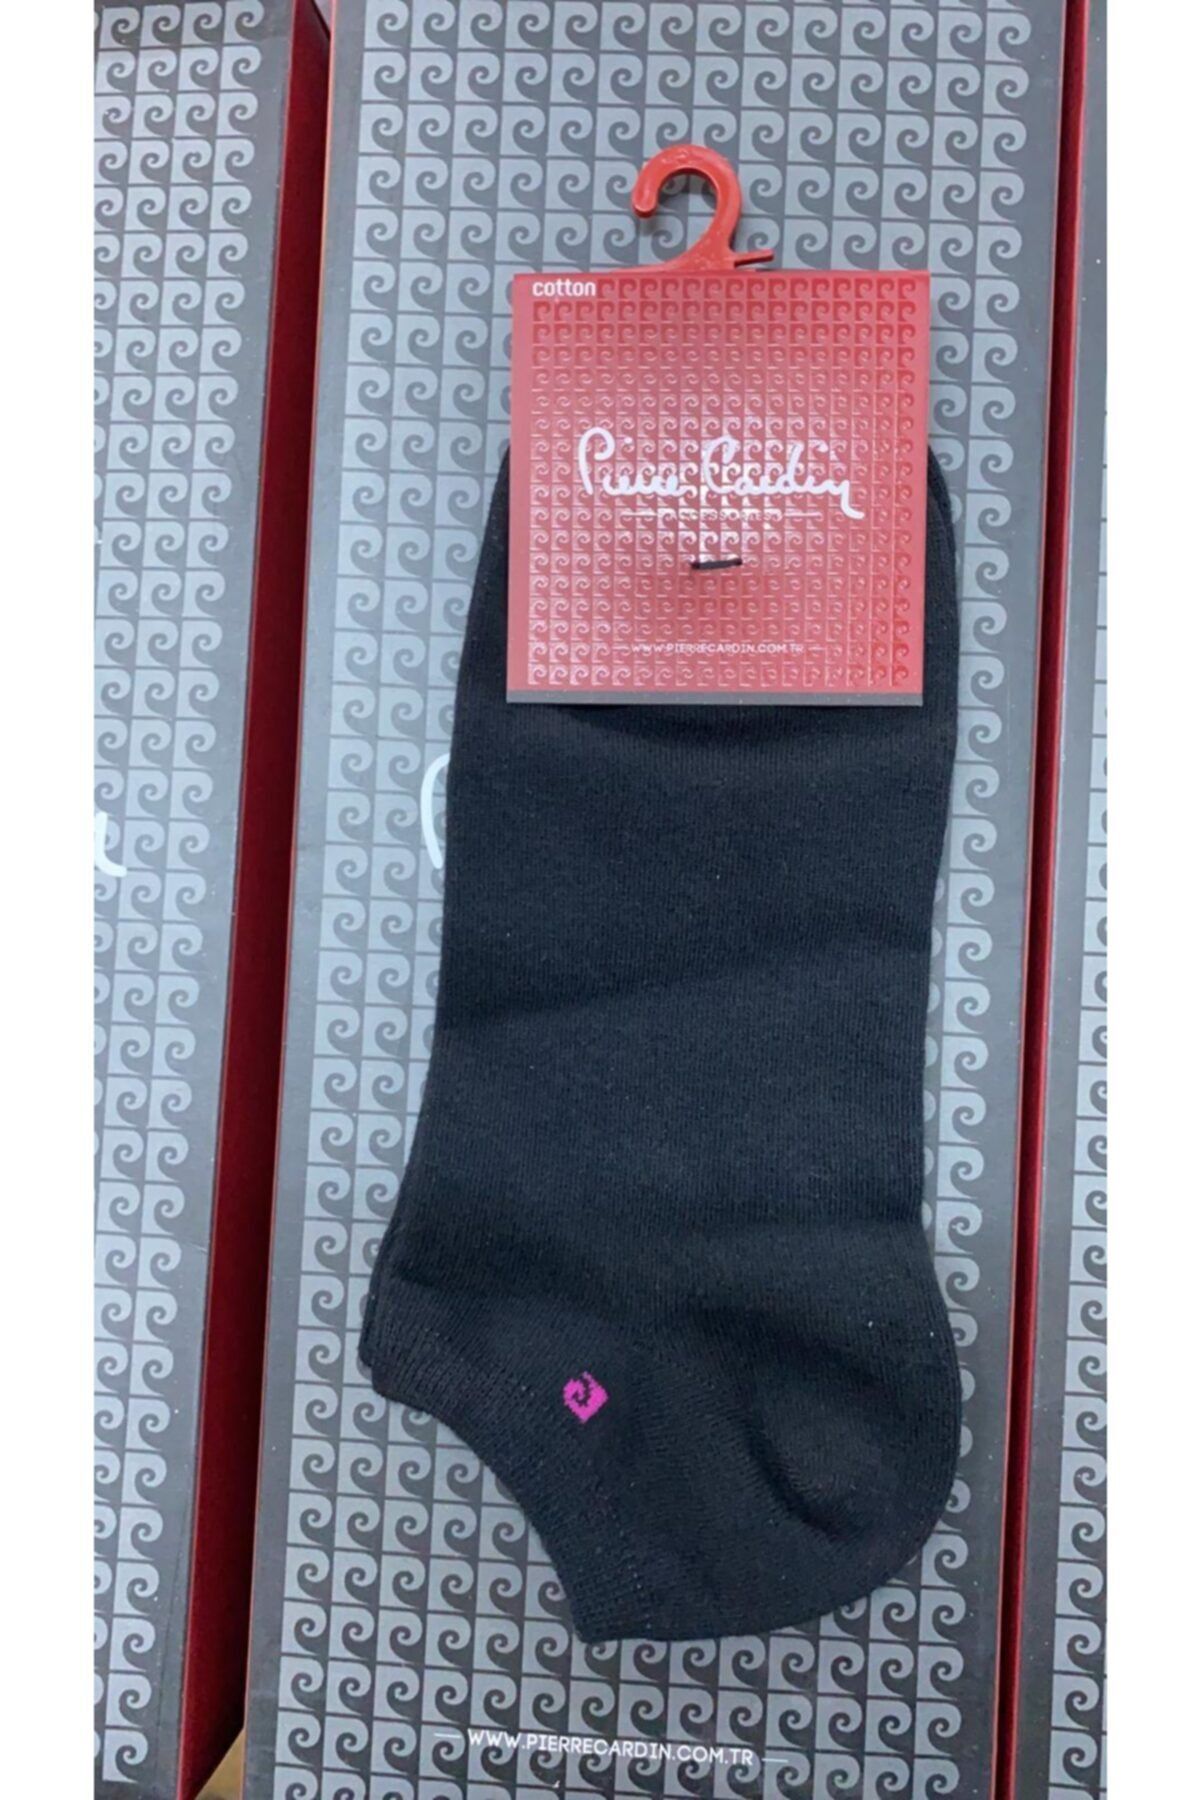 Pierre Cardin Kadın Siyah Patik Çorap 6'lı Paket